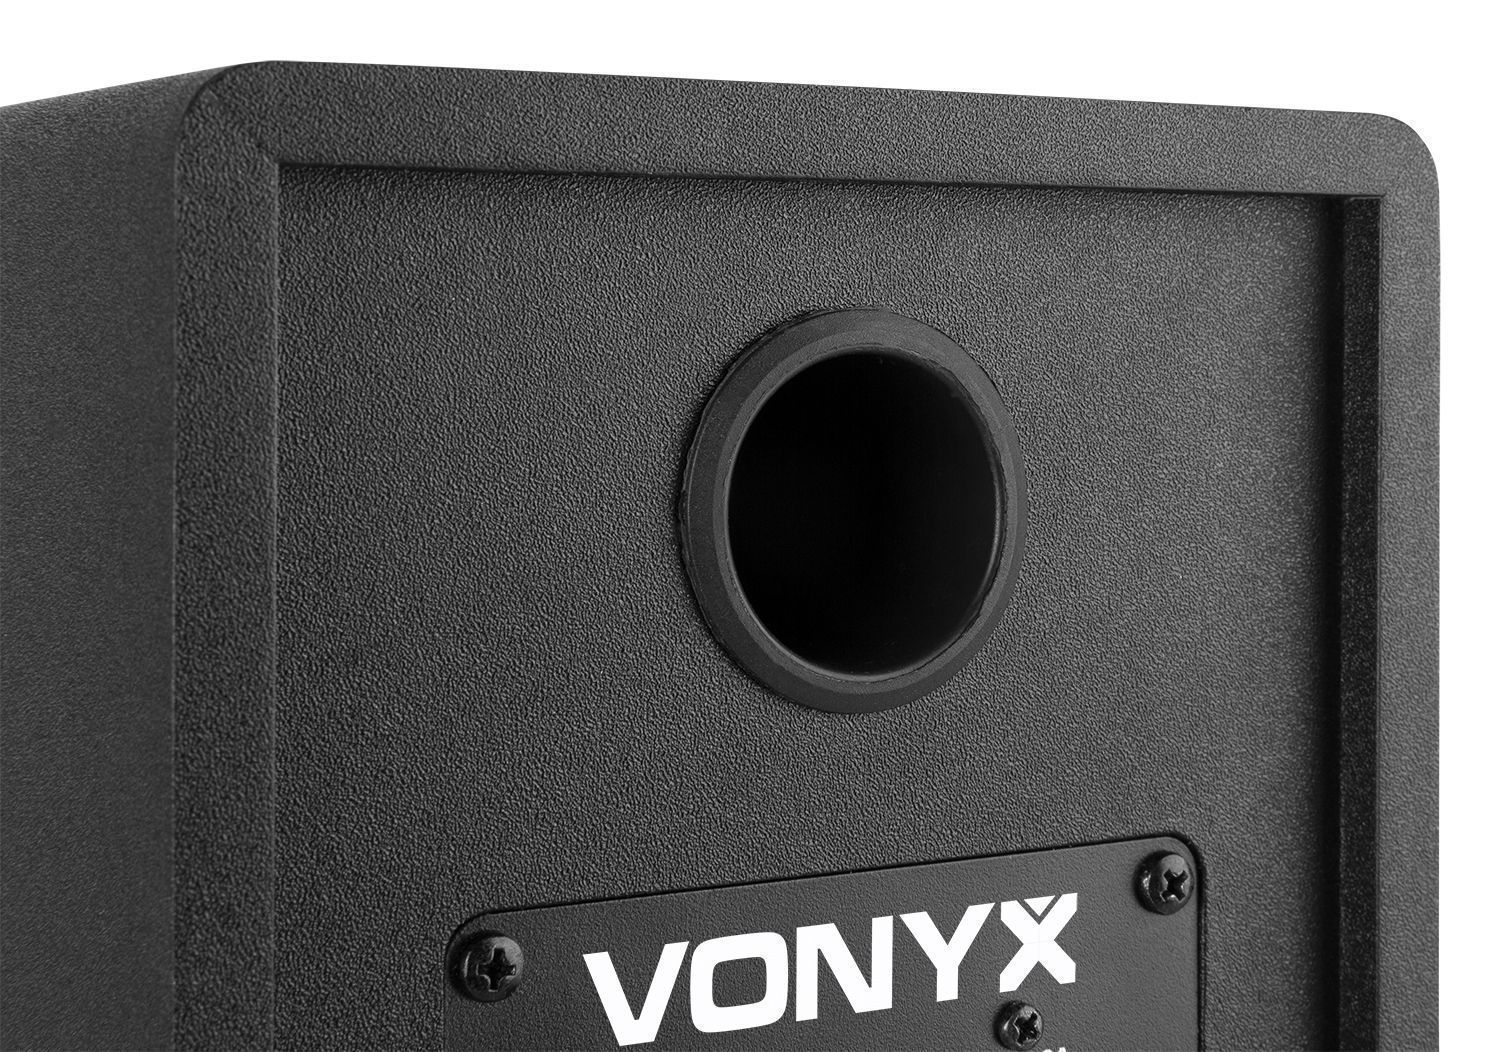 Retourdeal vonyx smn40b actieve studio monitor speakers 100w zwart 6